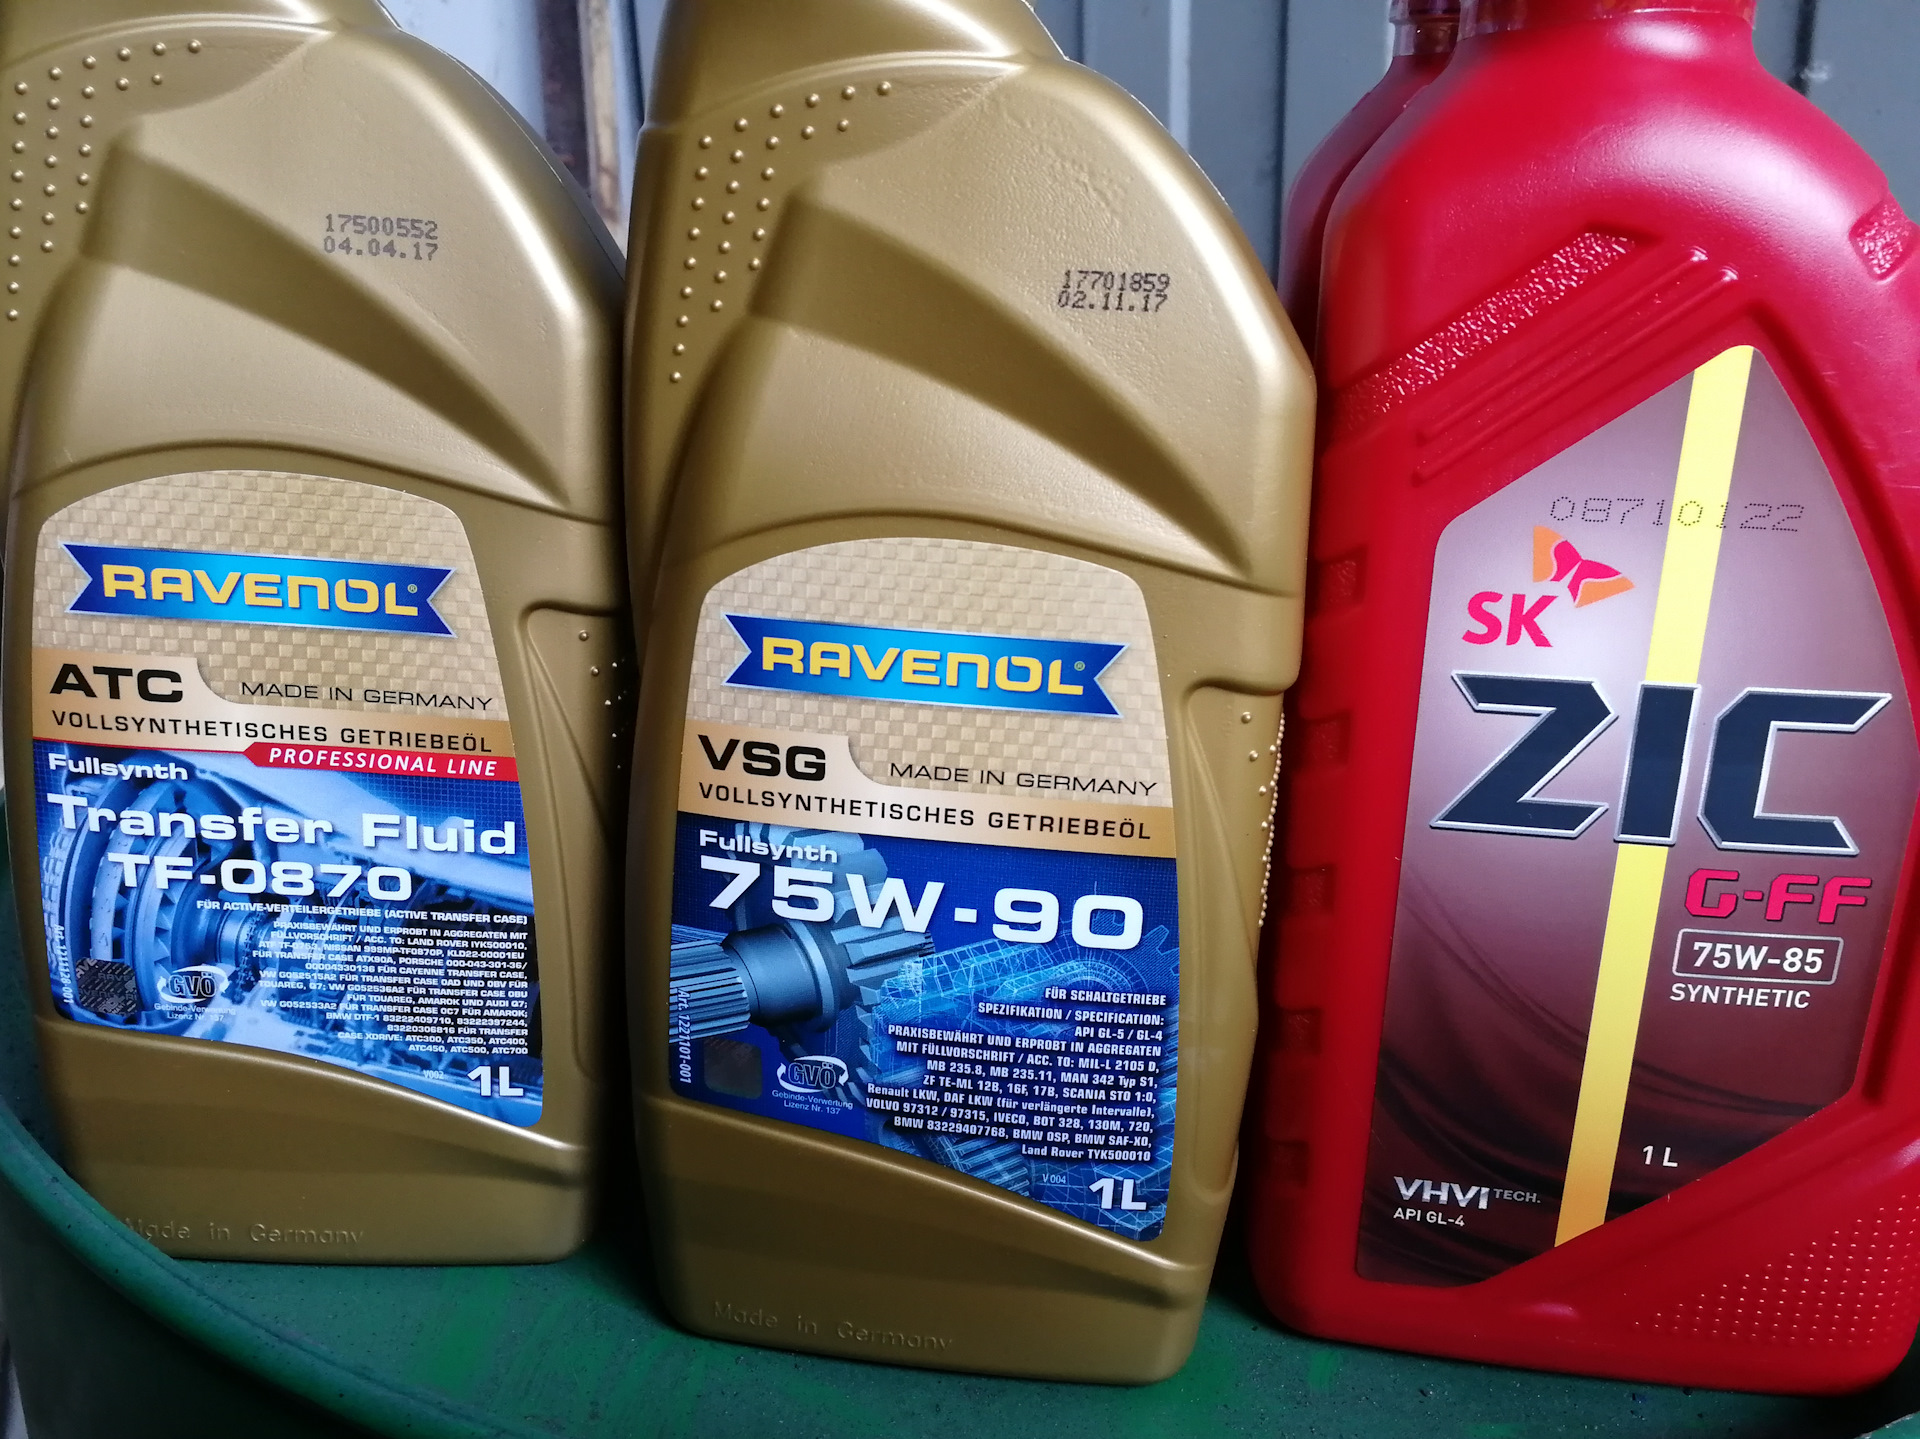 Замена масла киа соренто бензин 2.4. Ravenol VSG 75w-90. Масло для Kia Sorento 2.4. Ravenol VSG, 75w-90, 4 л. Масло в АКПП Киа Соренто 2.5 дизель 2007.